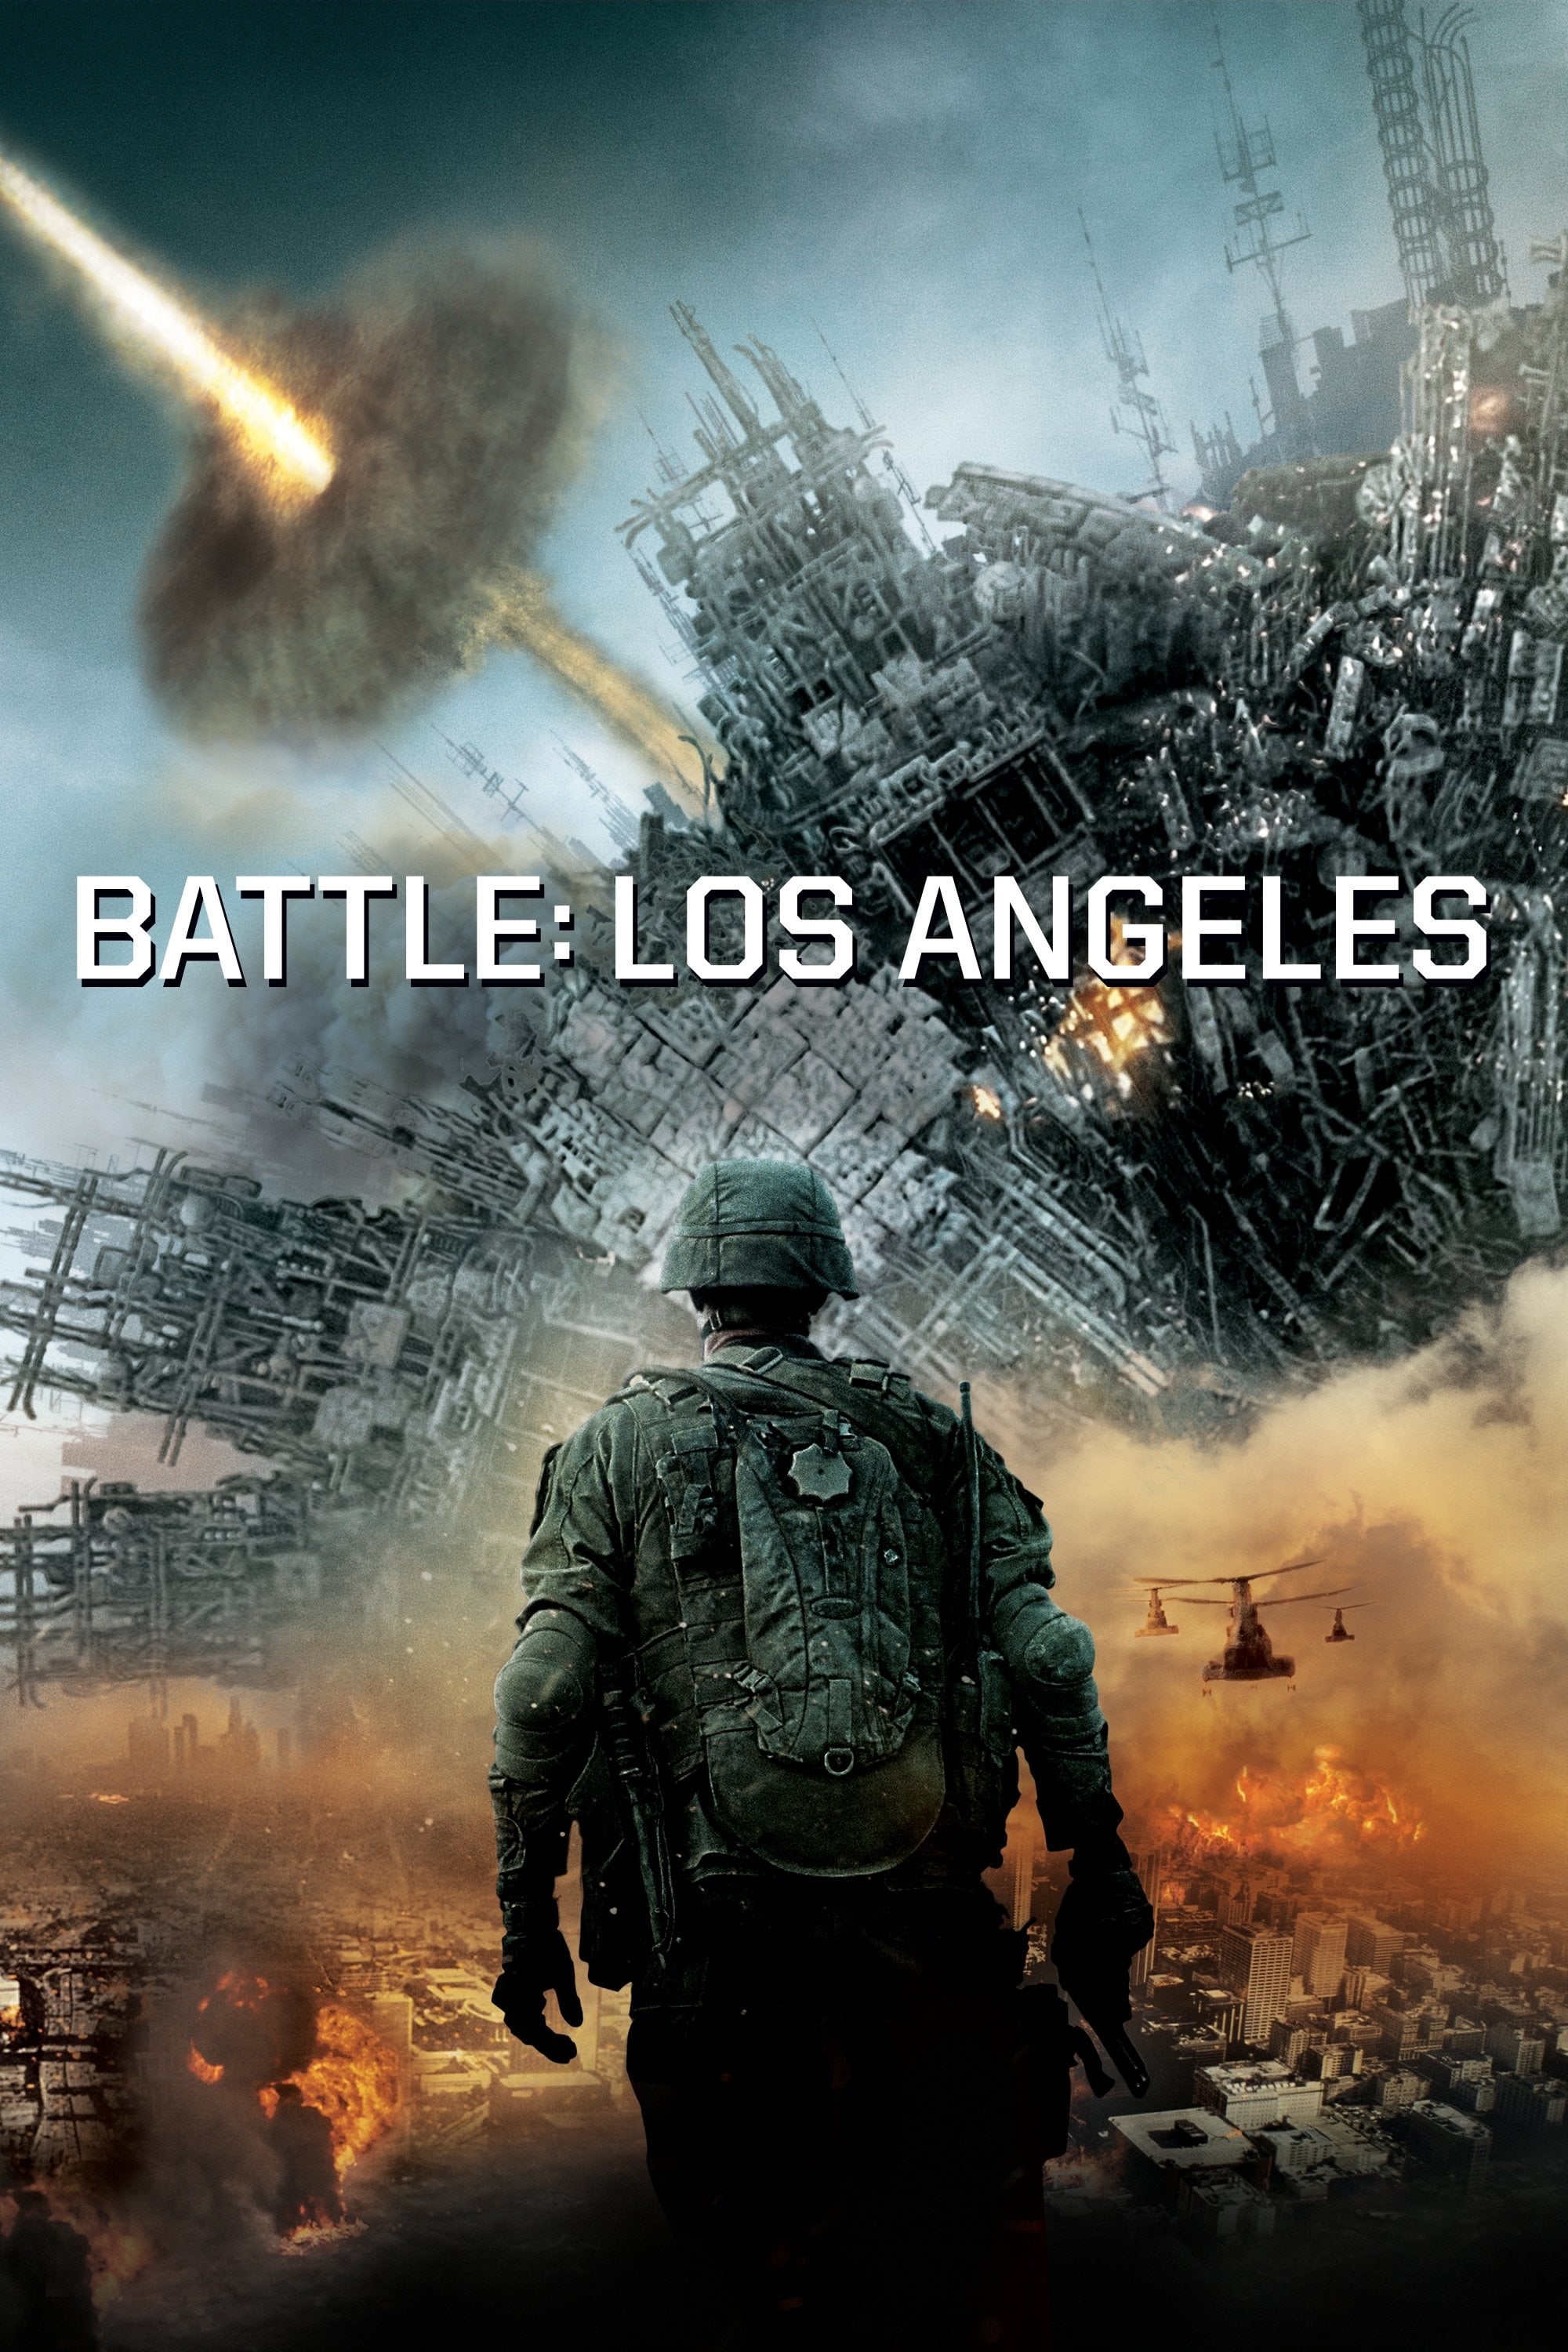 Invasão do Mundo: Batalha de Los Angeles (2011)